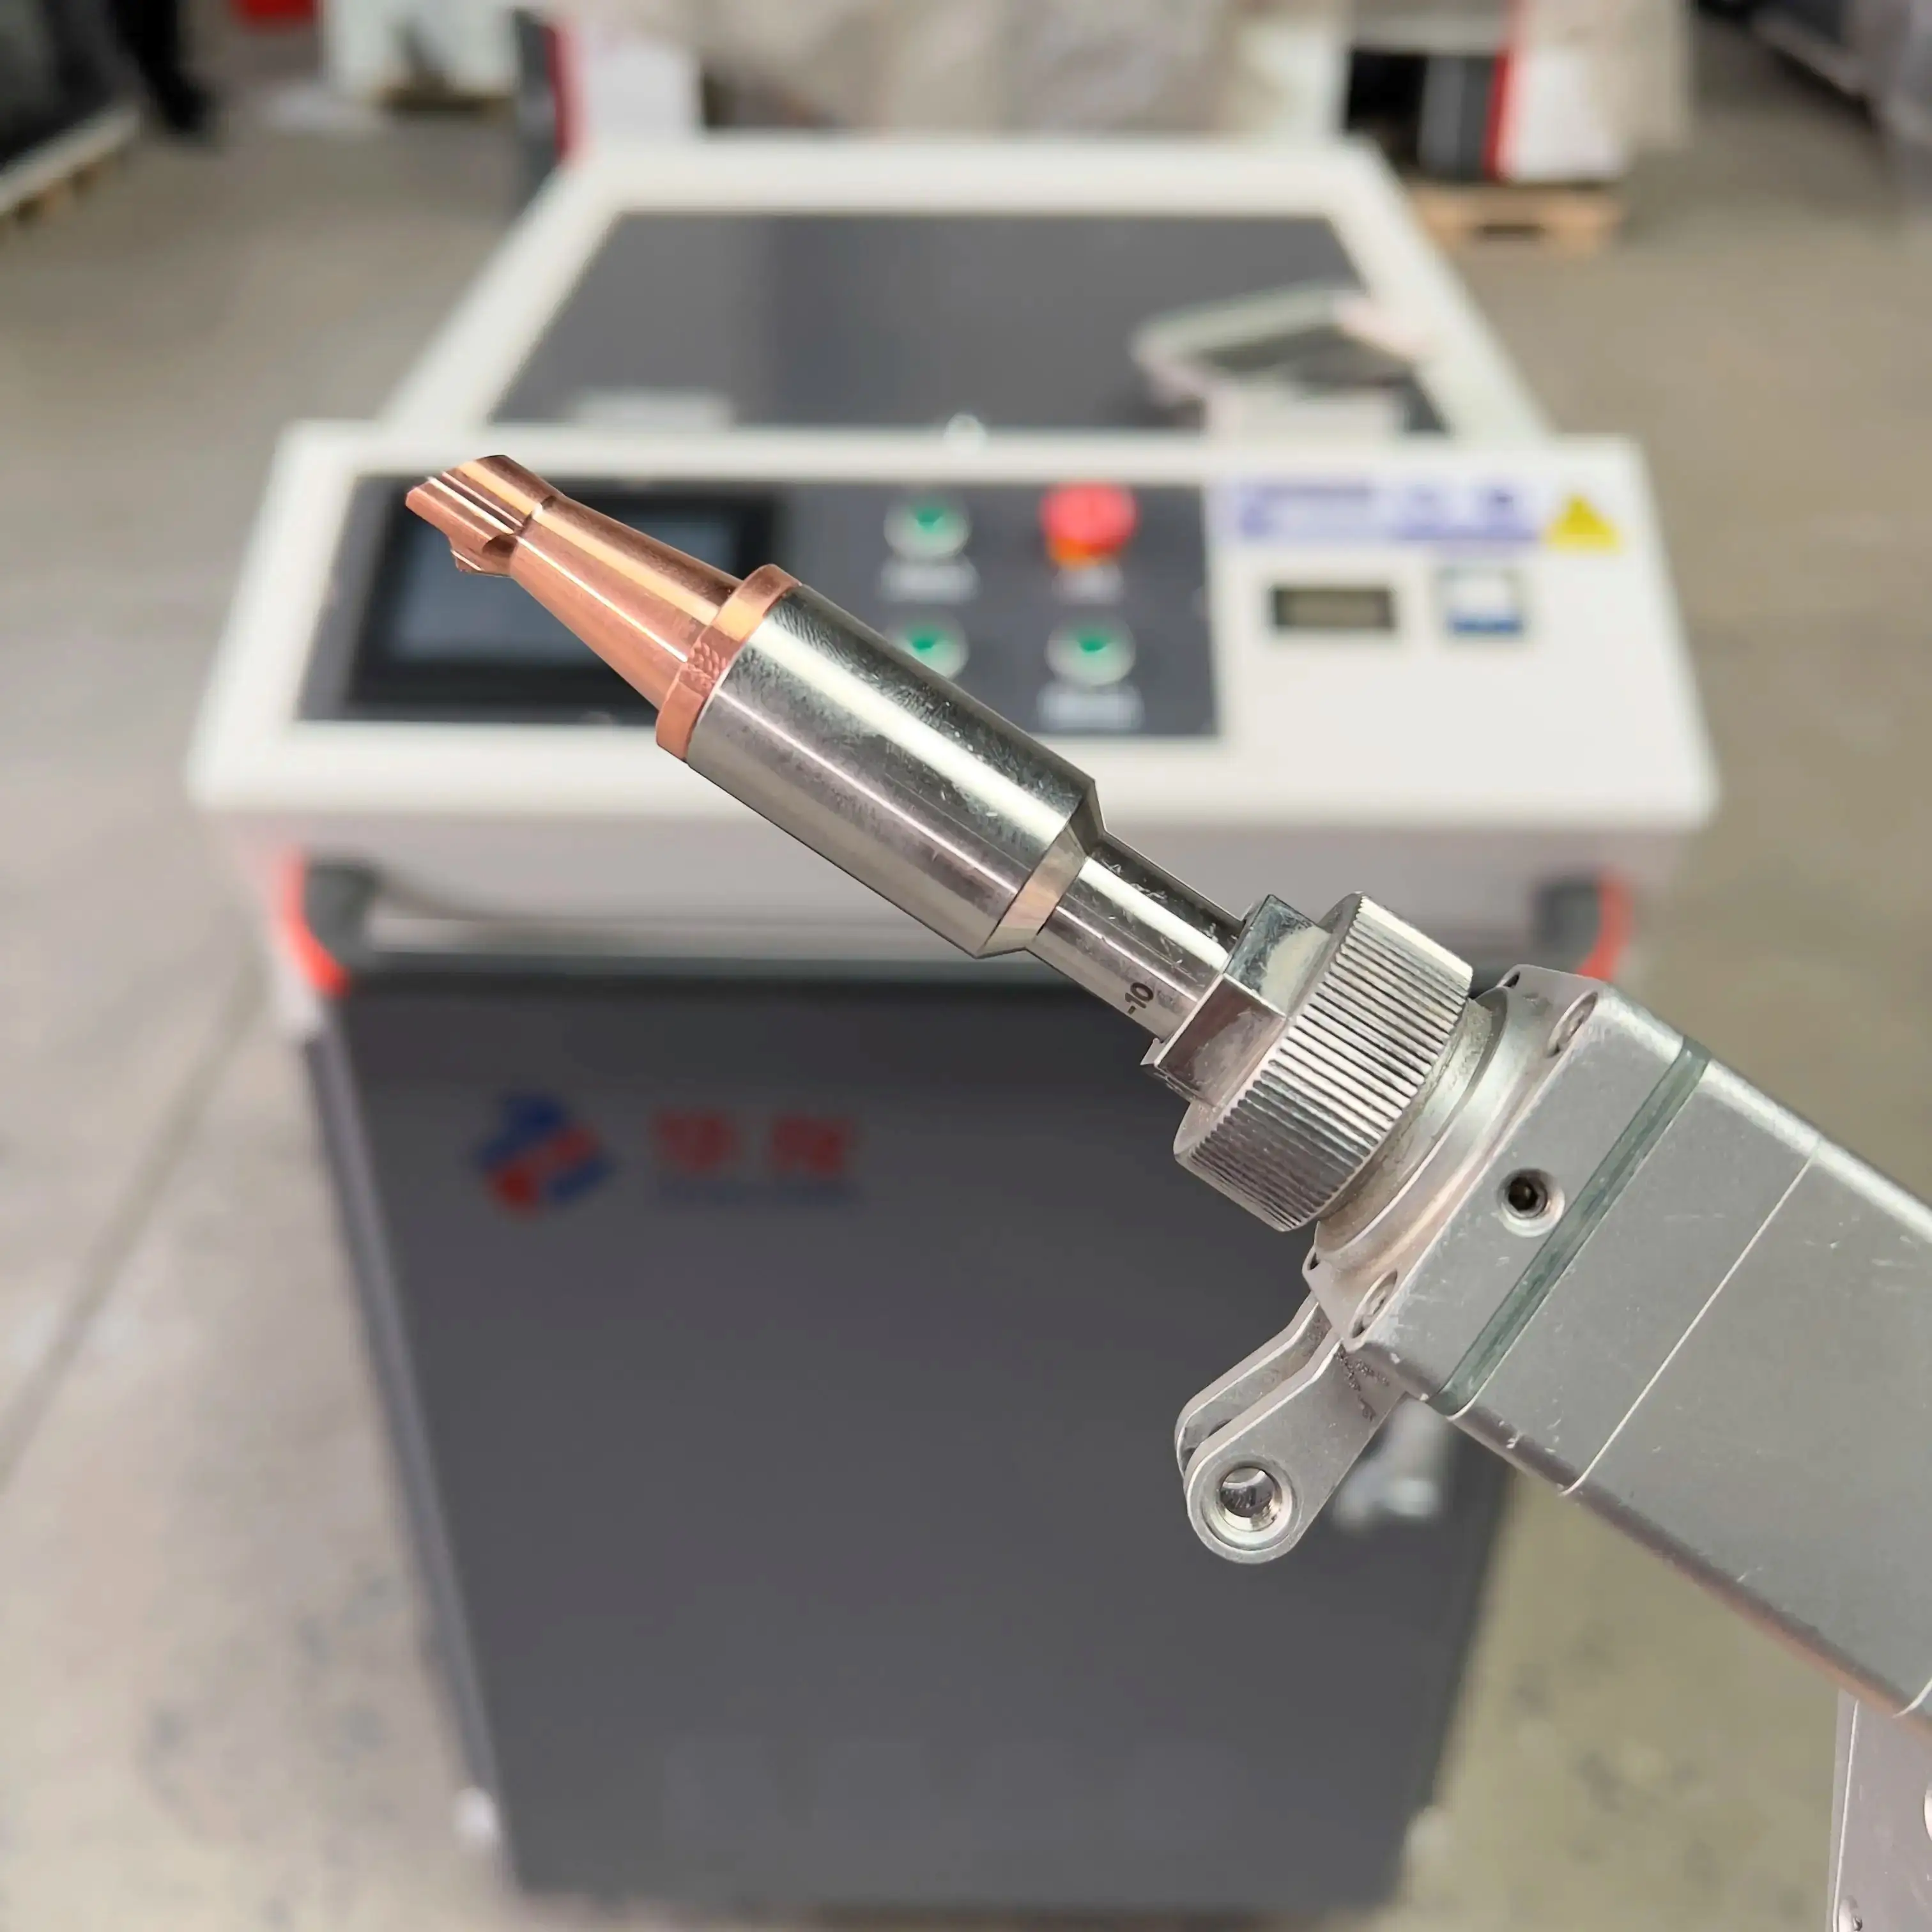 MAX Lazer Welding Machine Handheld Price CNC Fiber metal welding laser machine portable laser welding laser welder